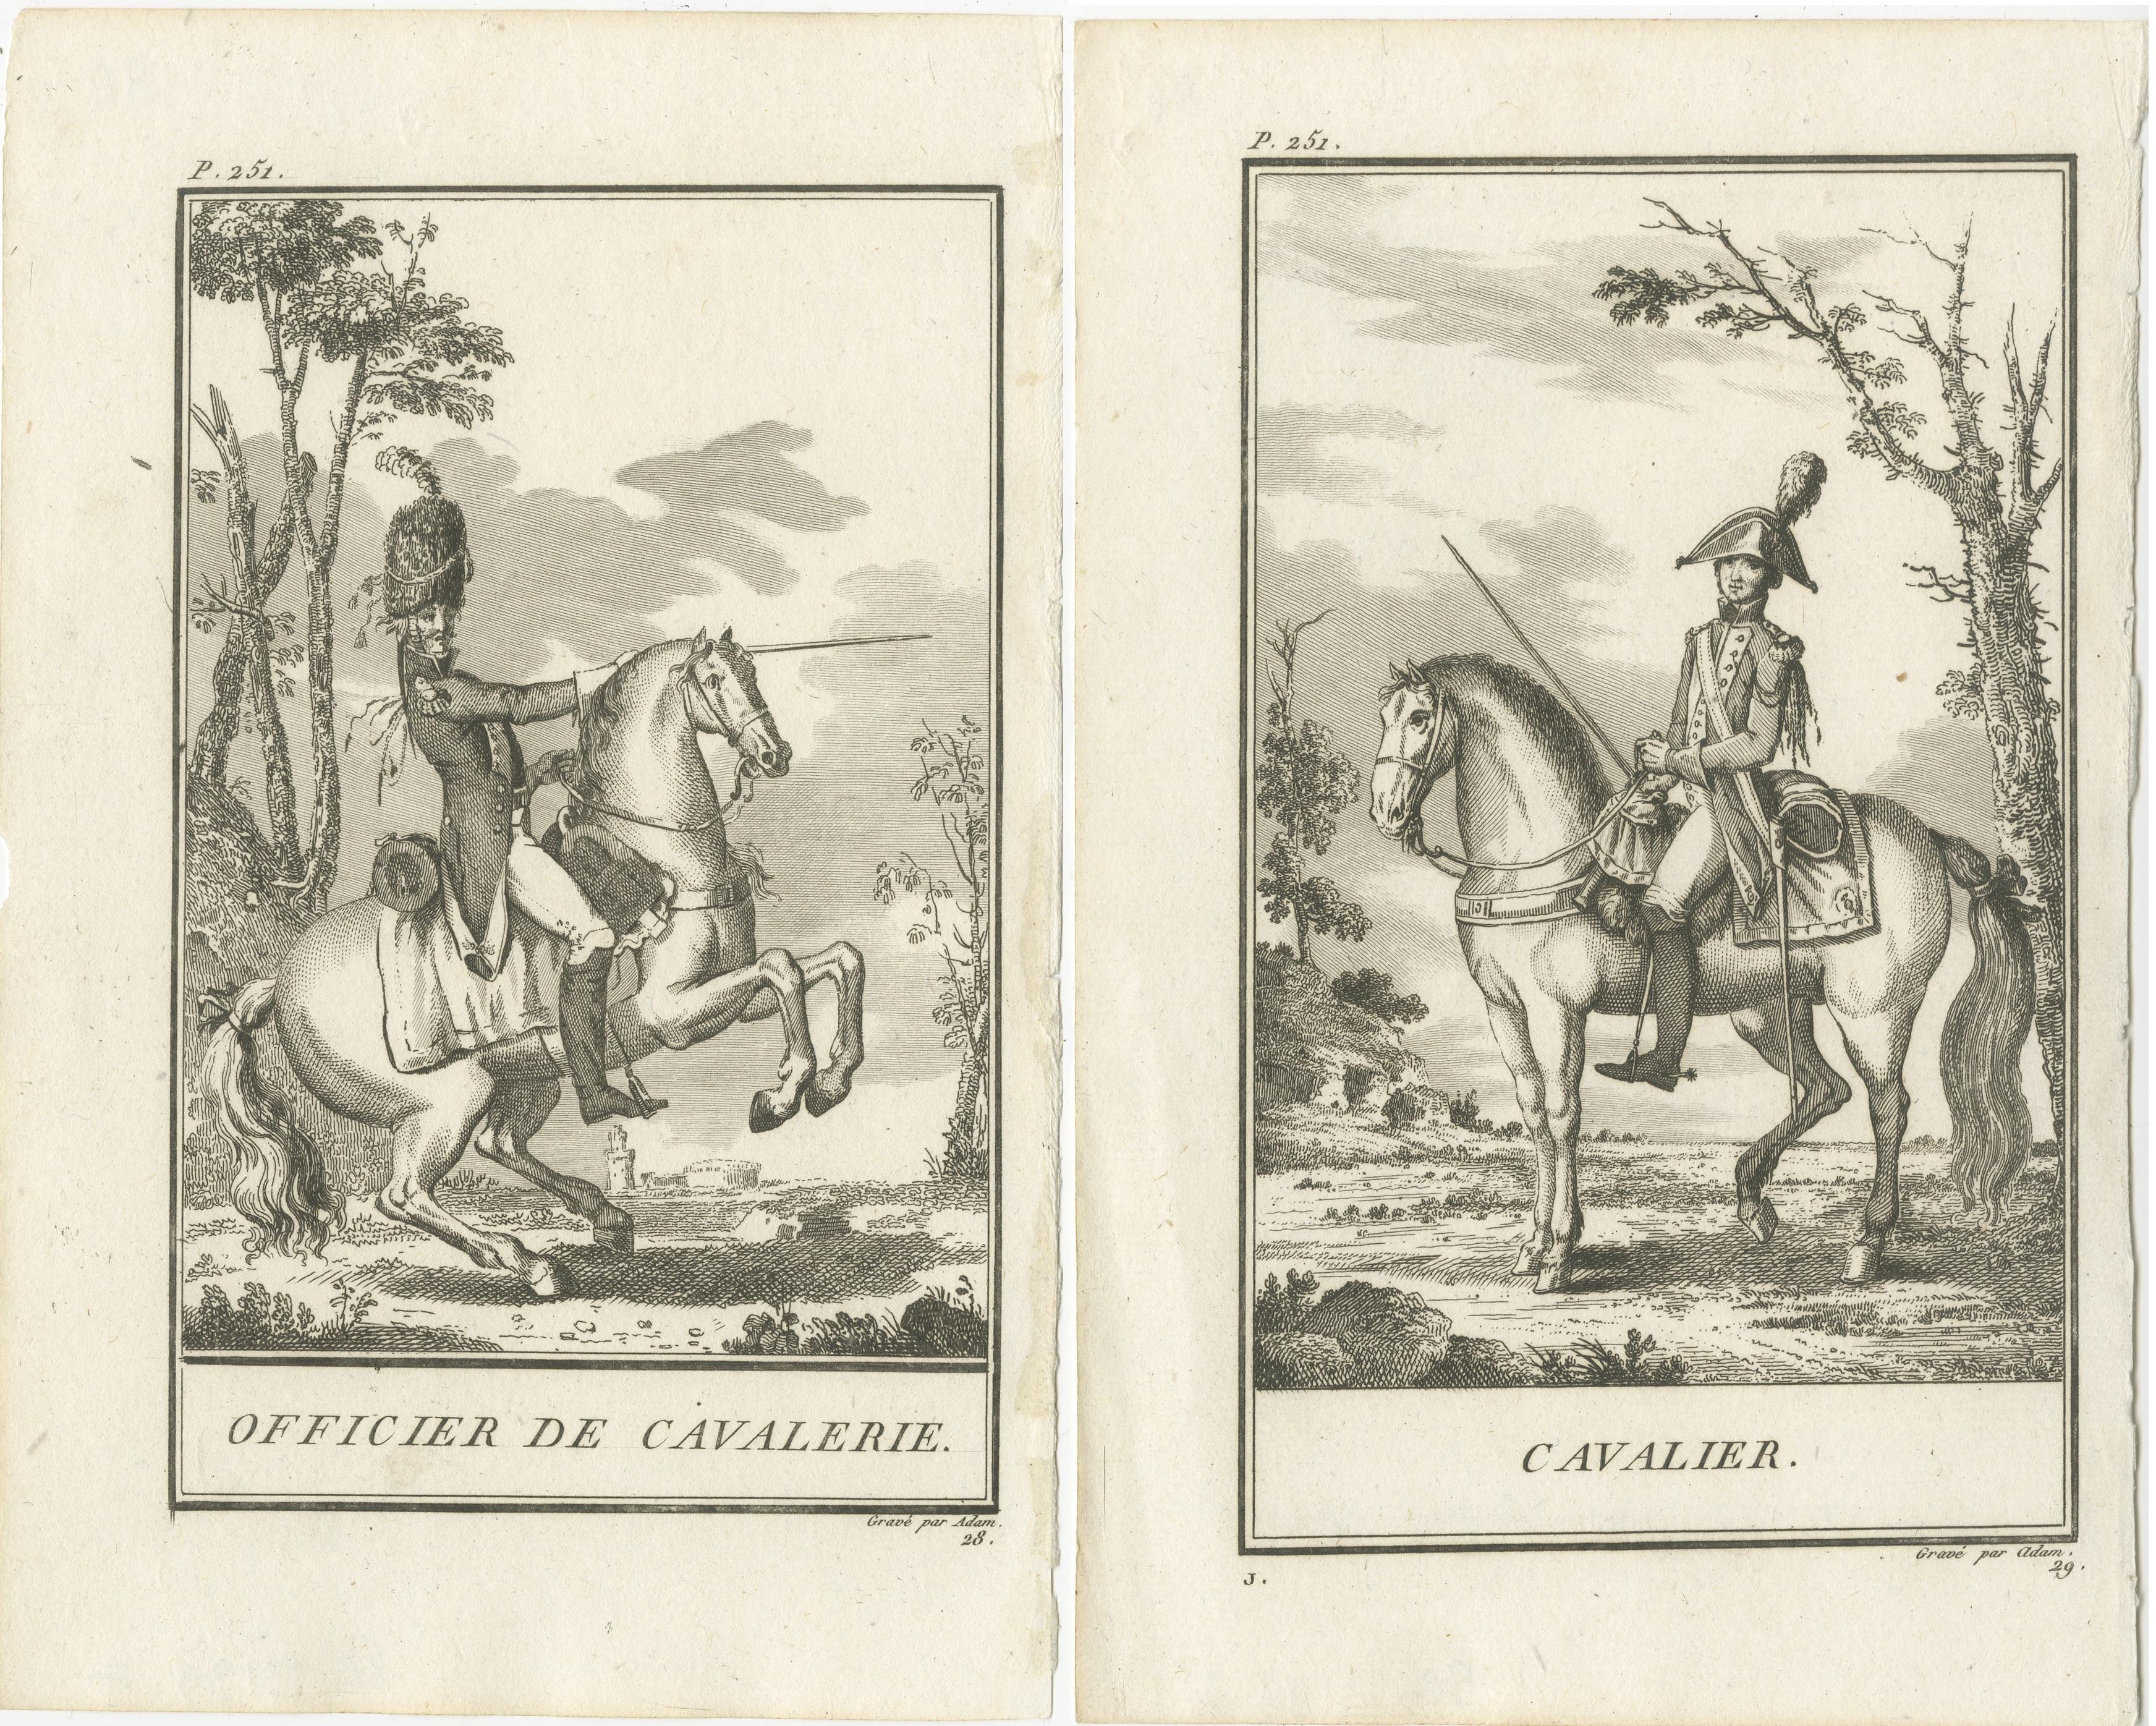 Set of two antique horse riding prints titled 'Officier de Cavalerie' and 'Cavalier'. The prints show a cavalry officer and a cavalry soldier. These prints originate from 'École de cavalerie, contenant la connoissance: l'instruction et la